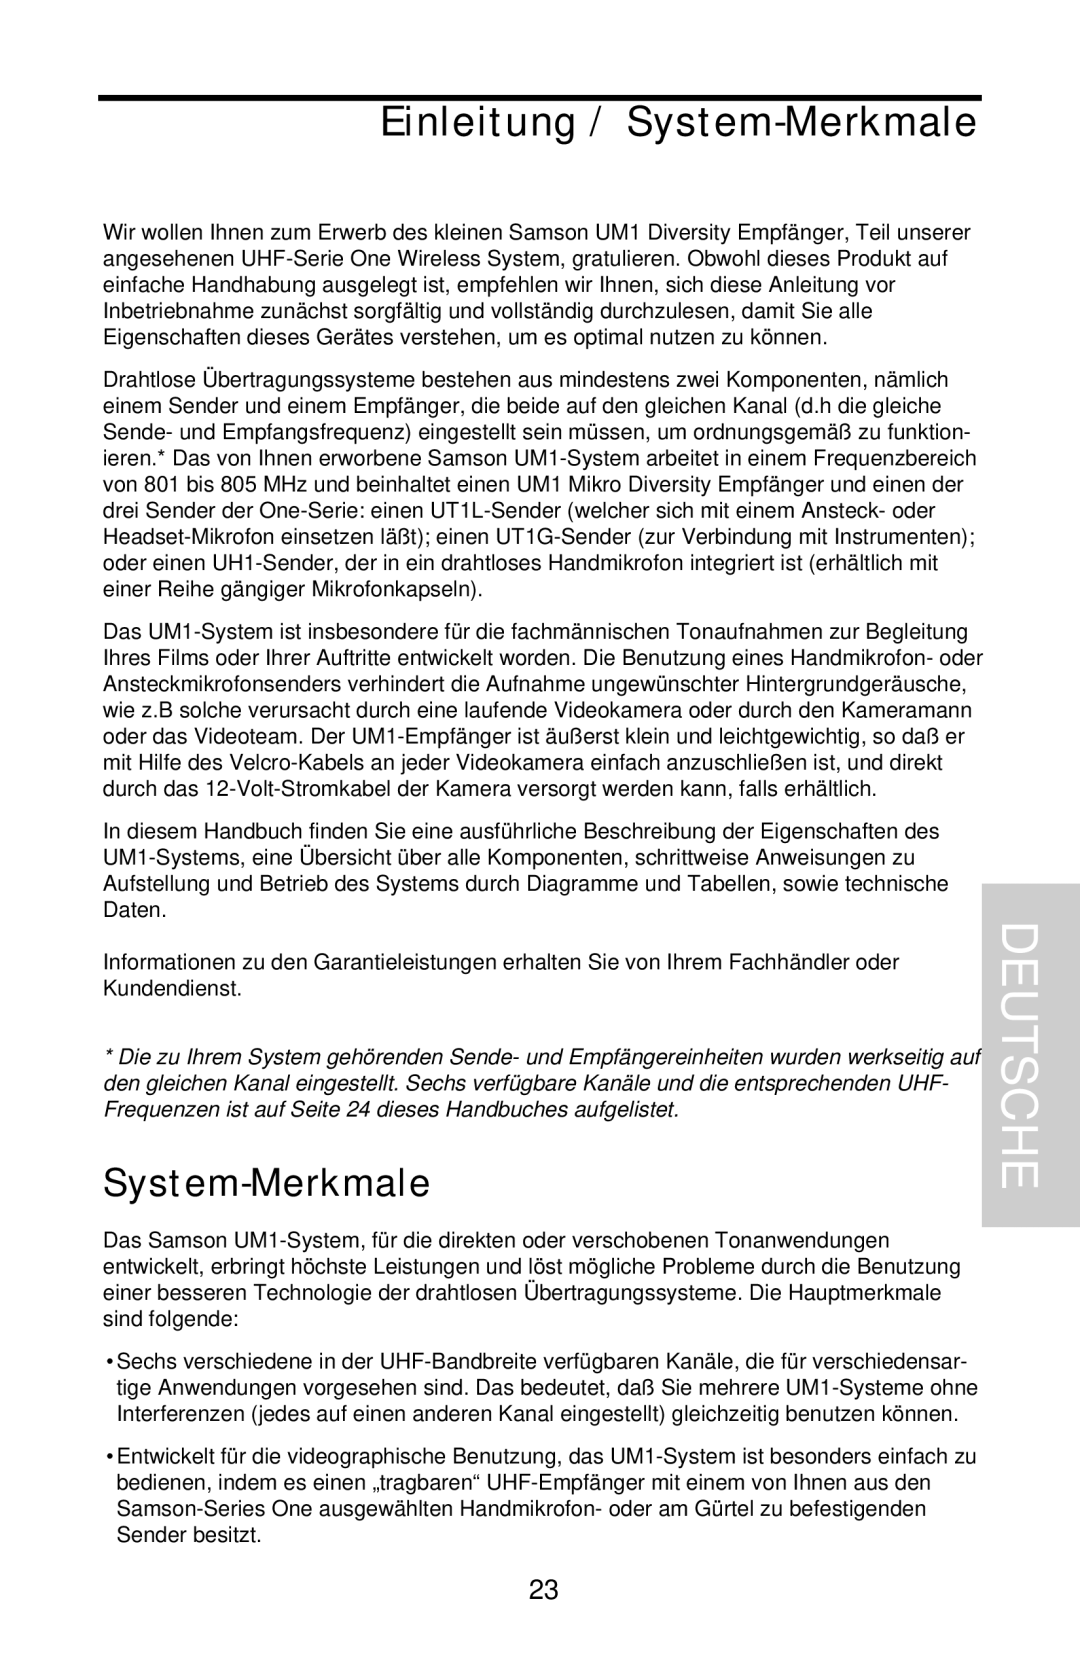 Samson UHF Series One owner manual Deutsche, Einleitung / System-Merkmale 